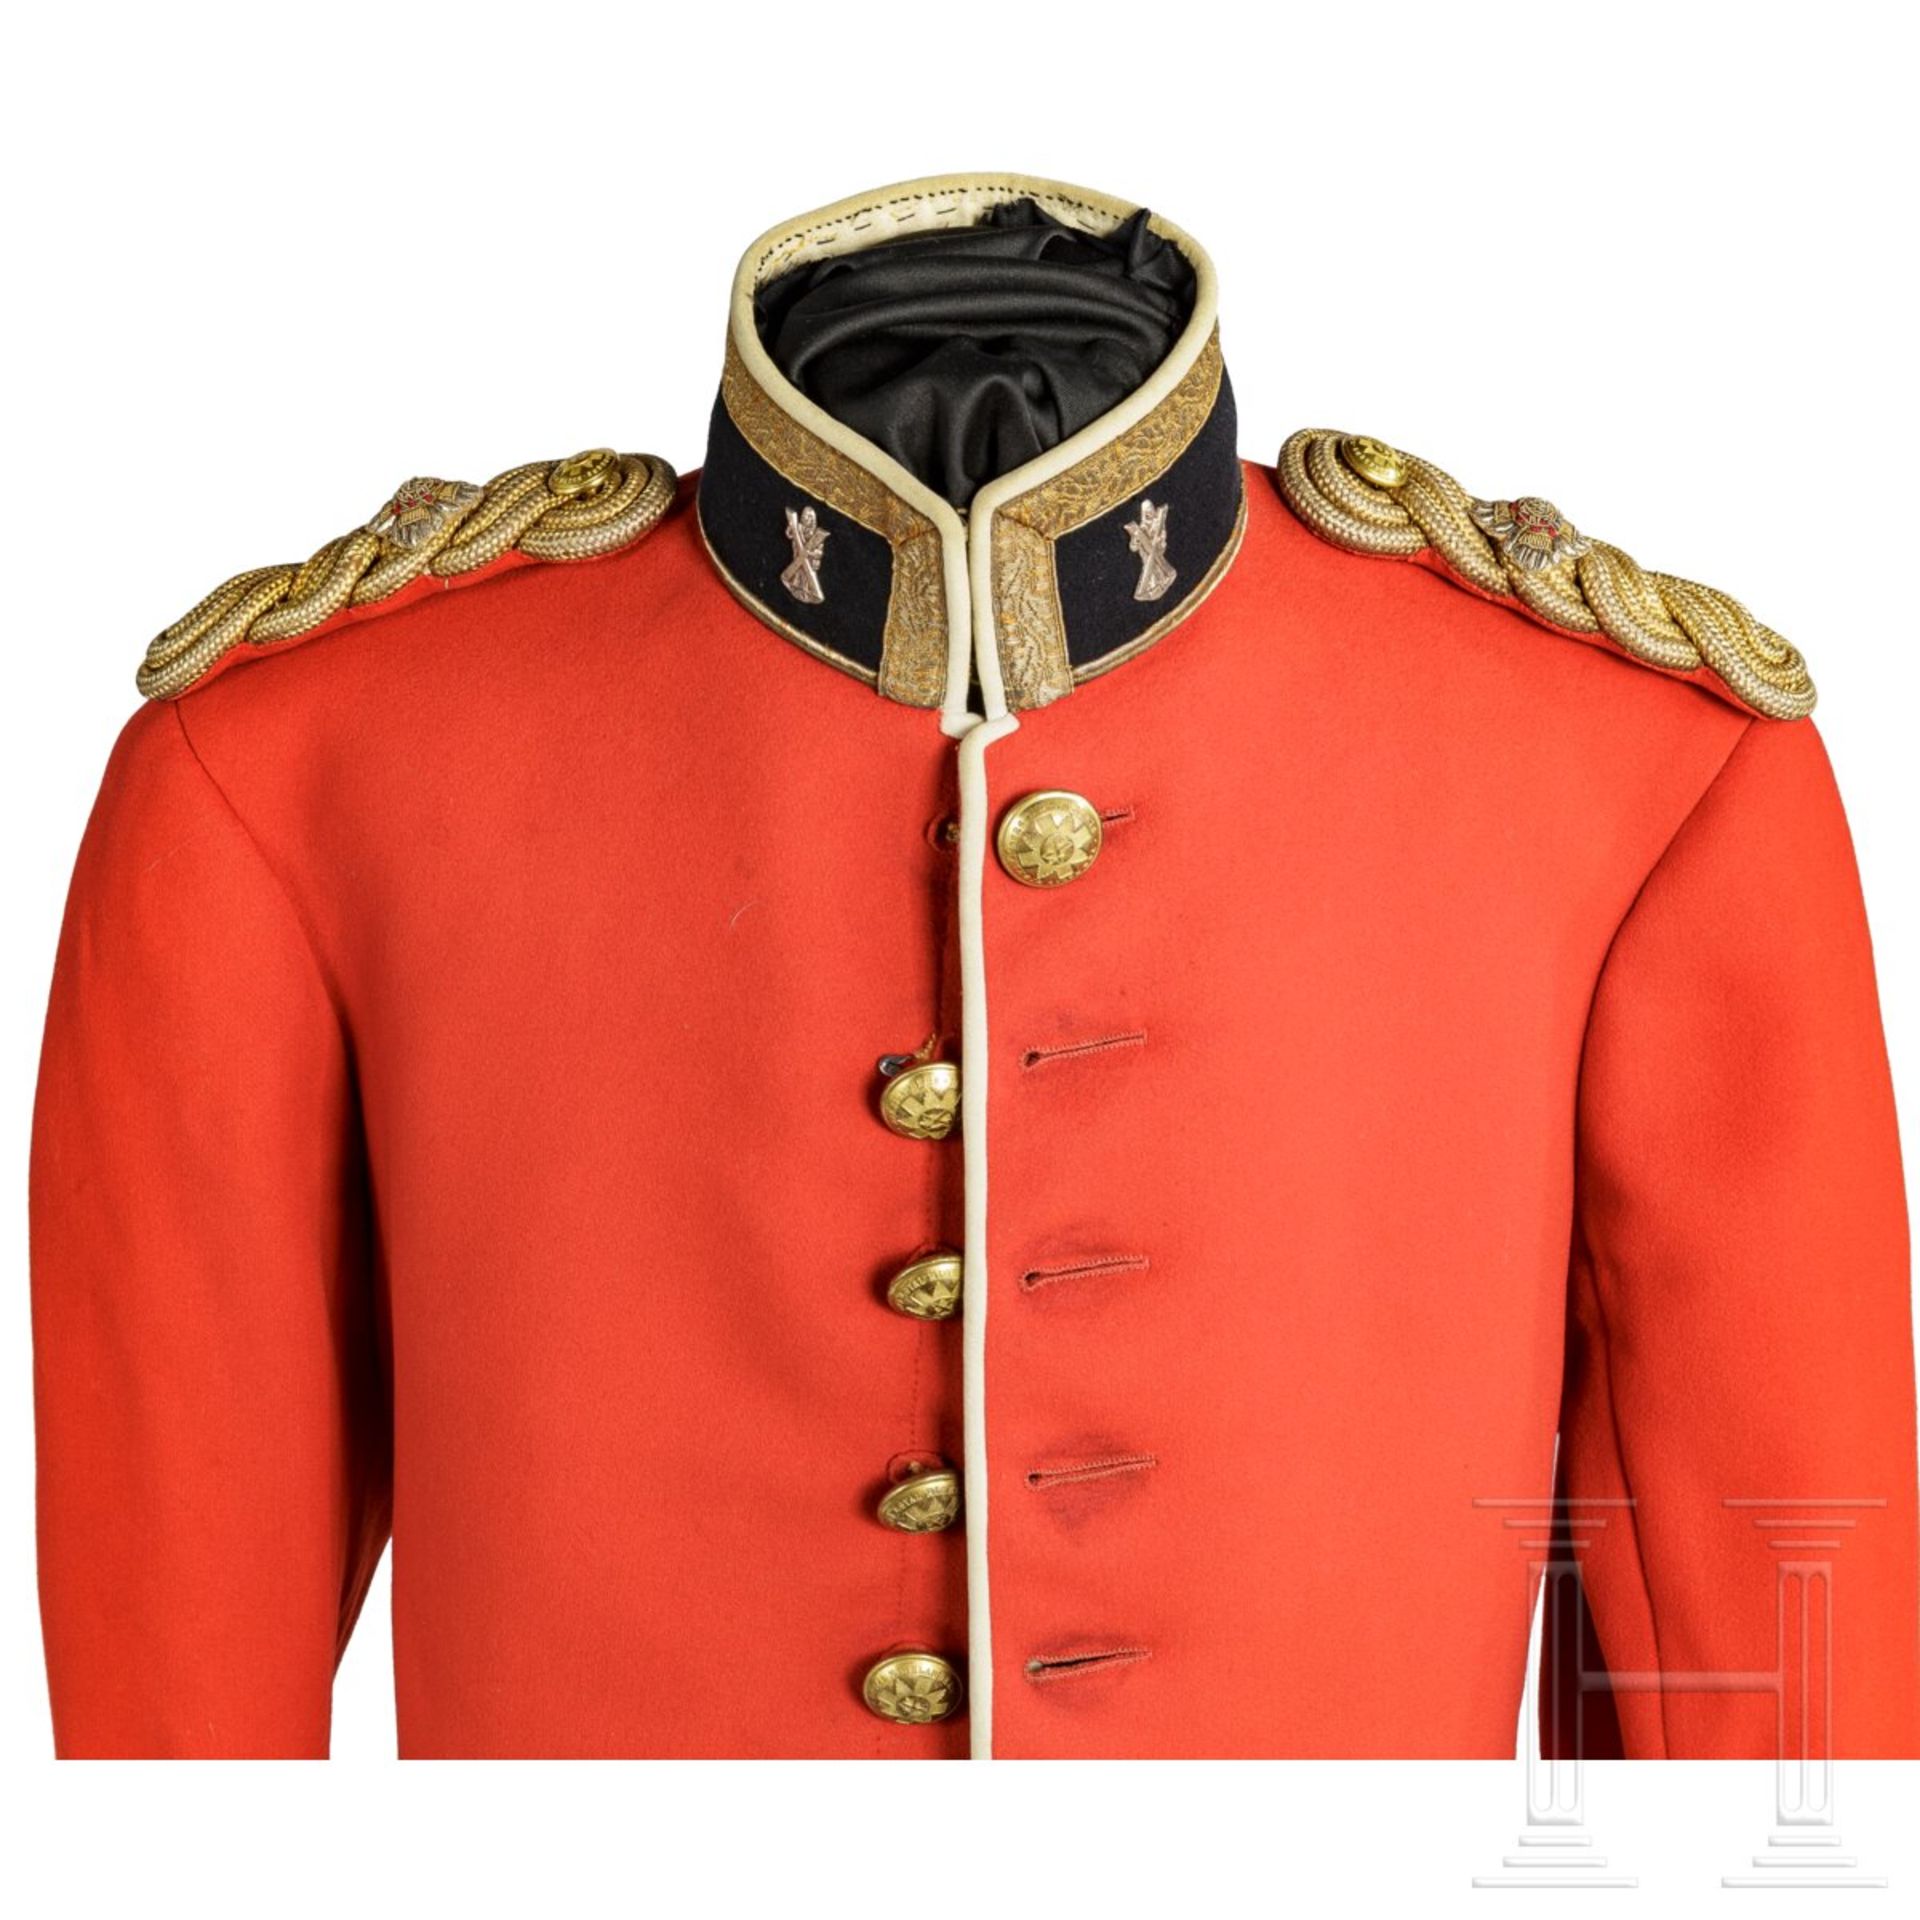 Uniform für einen Offizier der Black Watch, Royal Highlander, Ende 19. Jhdt. - Image 3 of 7